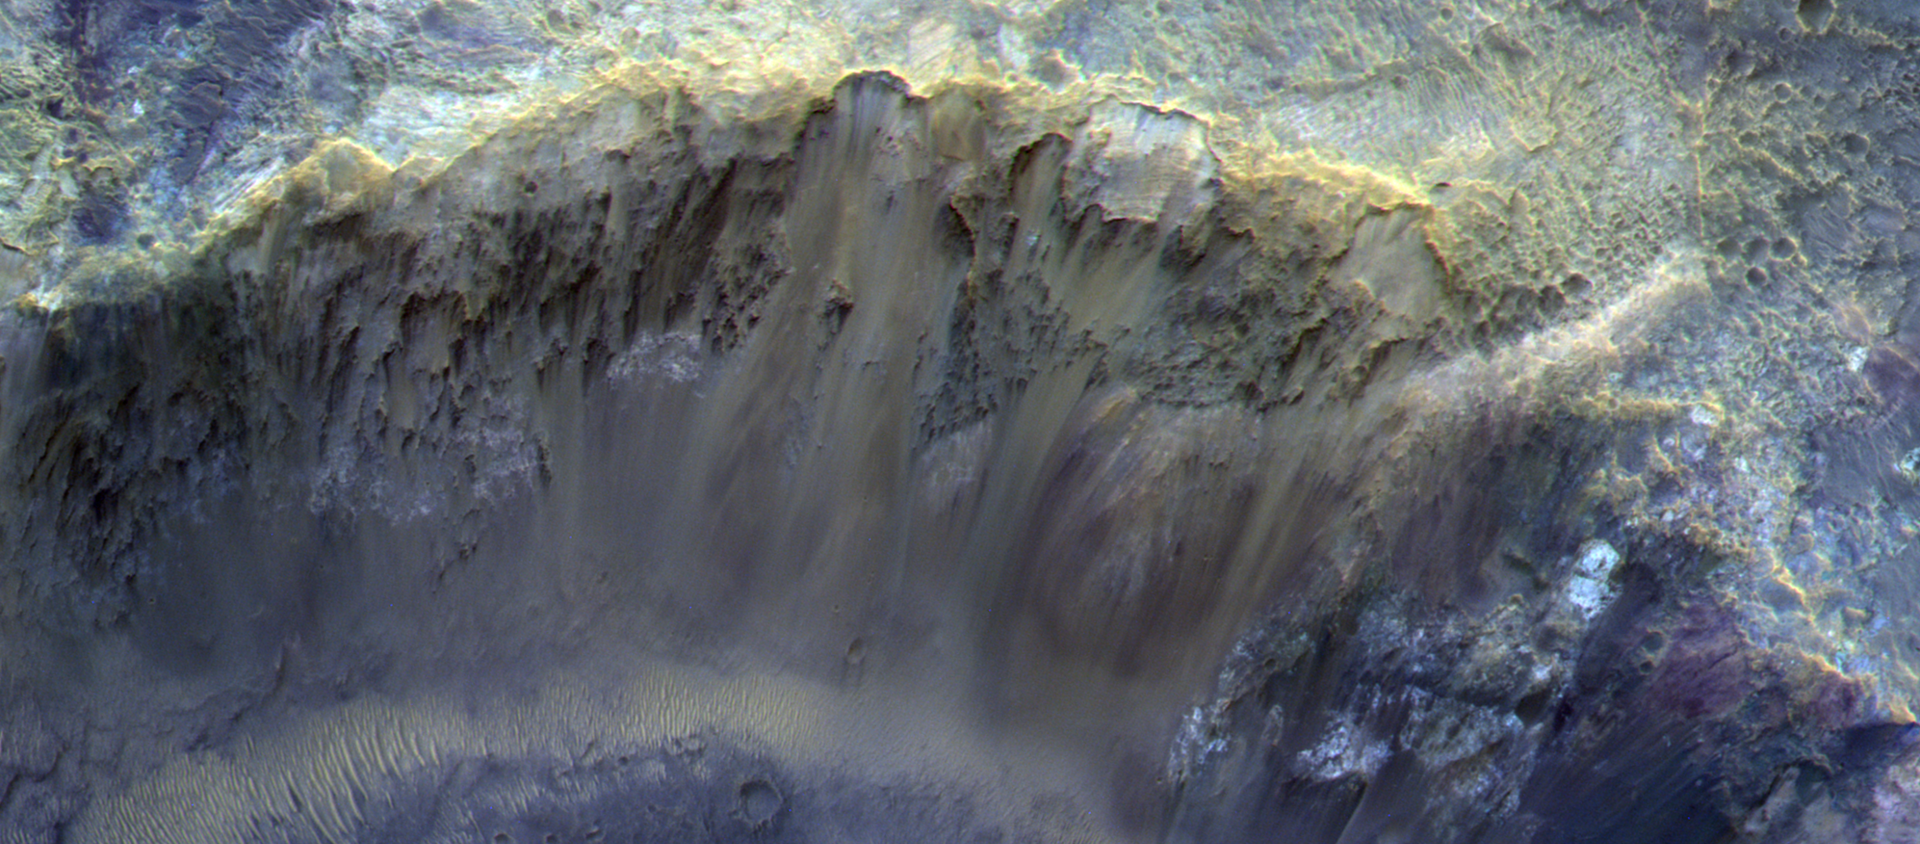 Роскосмос опубликовал детальный снимок кратера на Марсе - Sputnik Беларусь, 1920, 14.02.2021